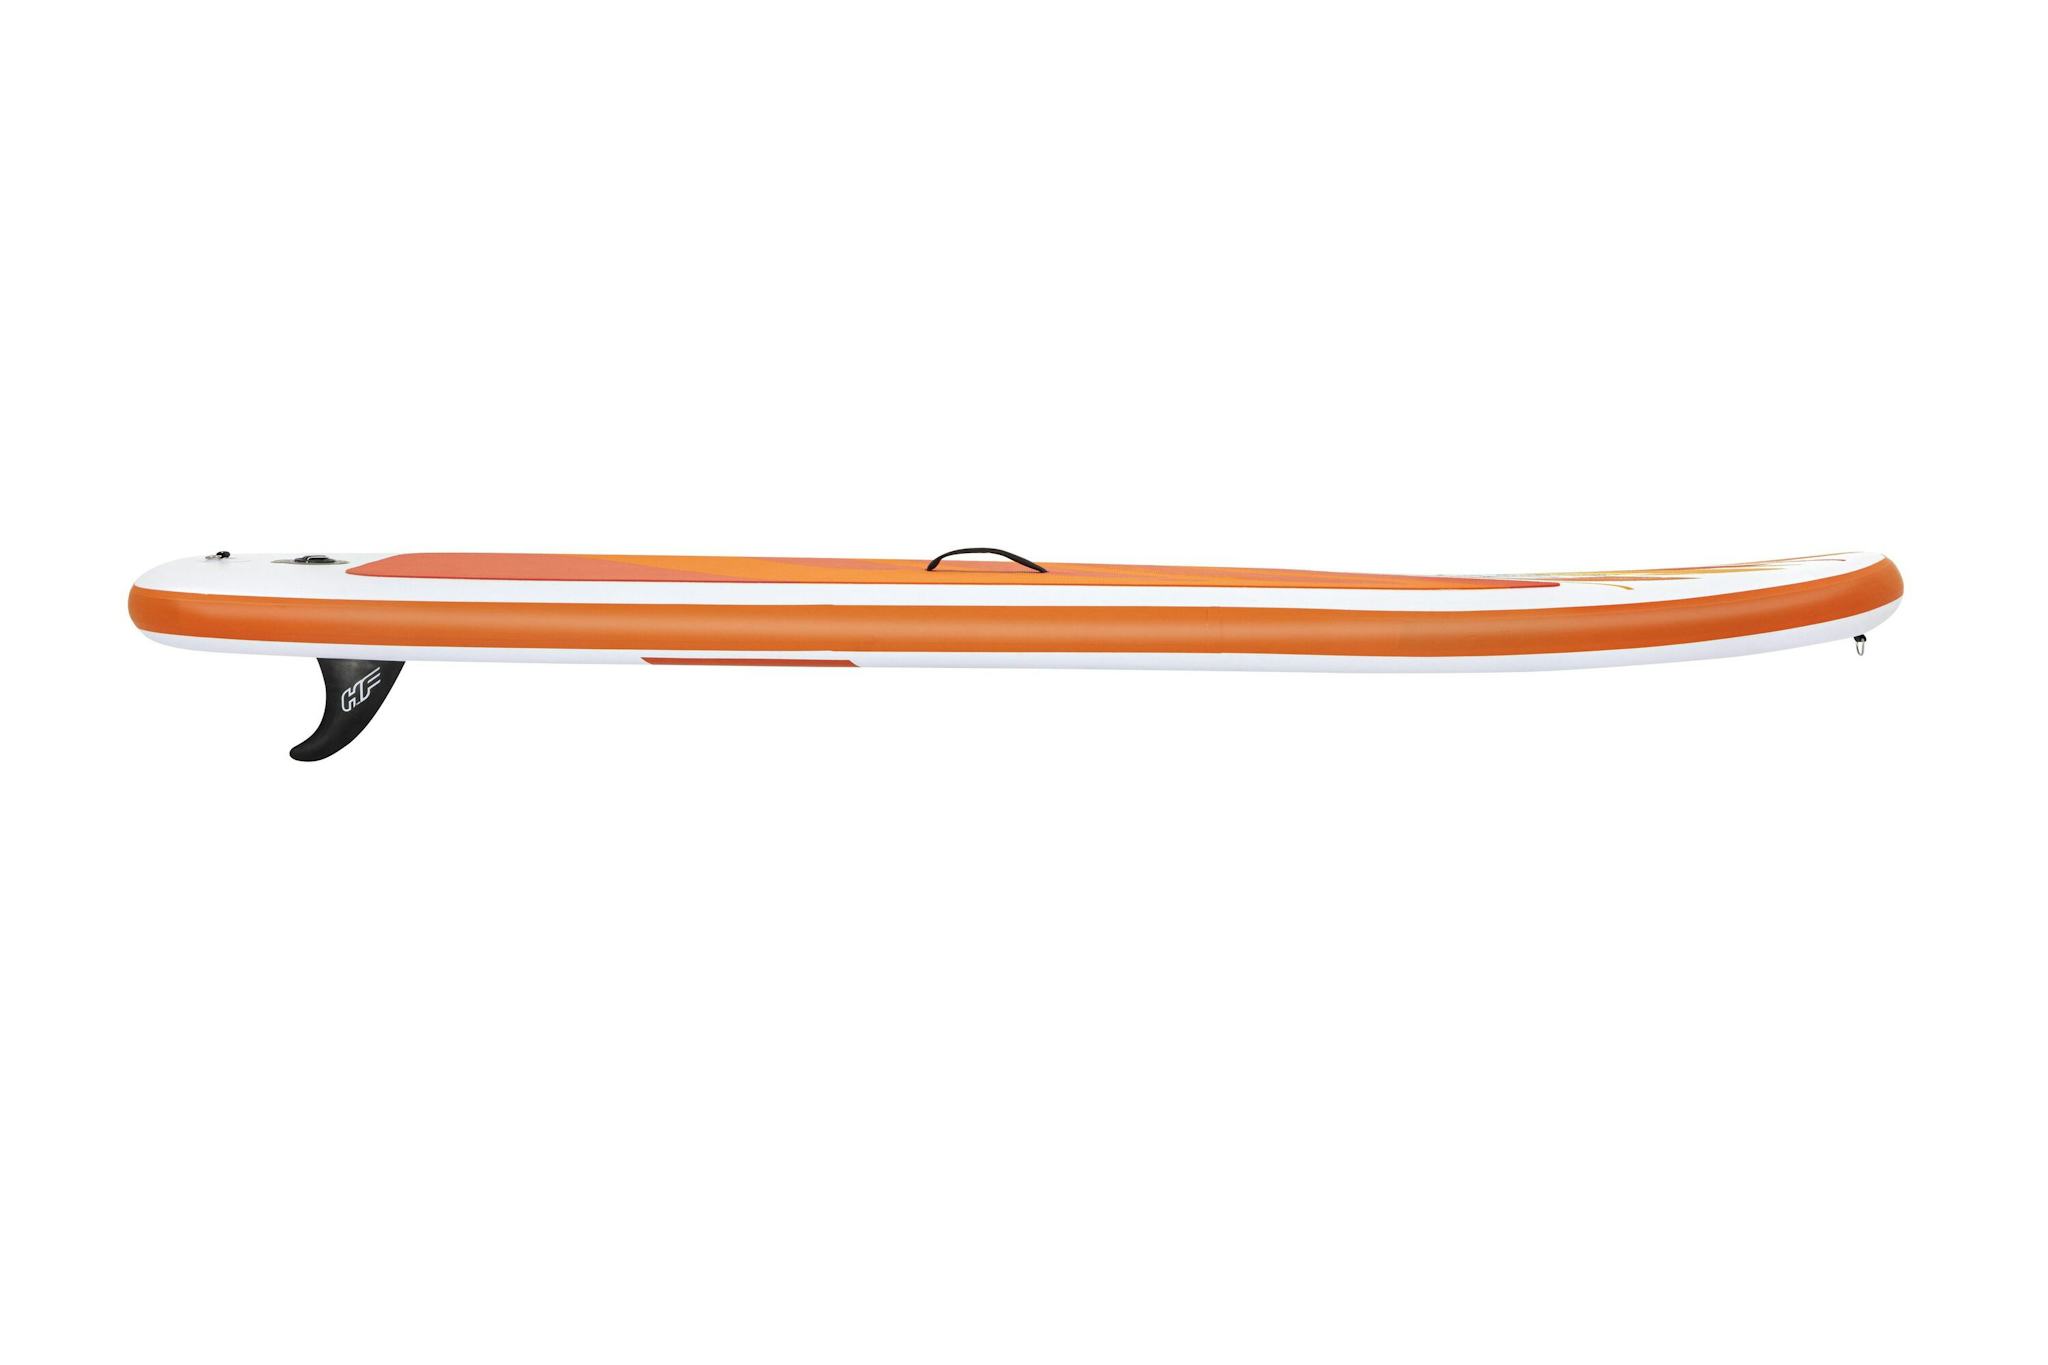 Sports d'eau Paddle SUP gonflable Hydro-Force™ Aqua Journey 274 x 76 x 12 cm, pompe, pagaie, leash, sac à dos de transport Bestway 2